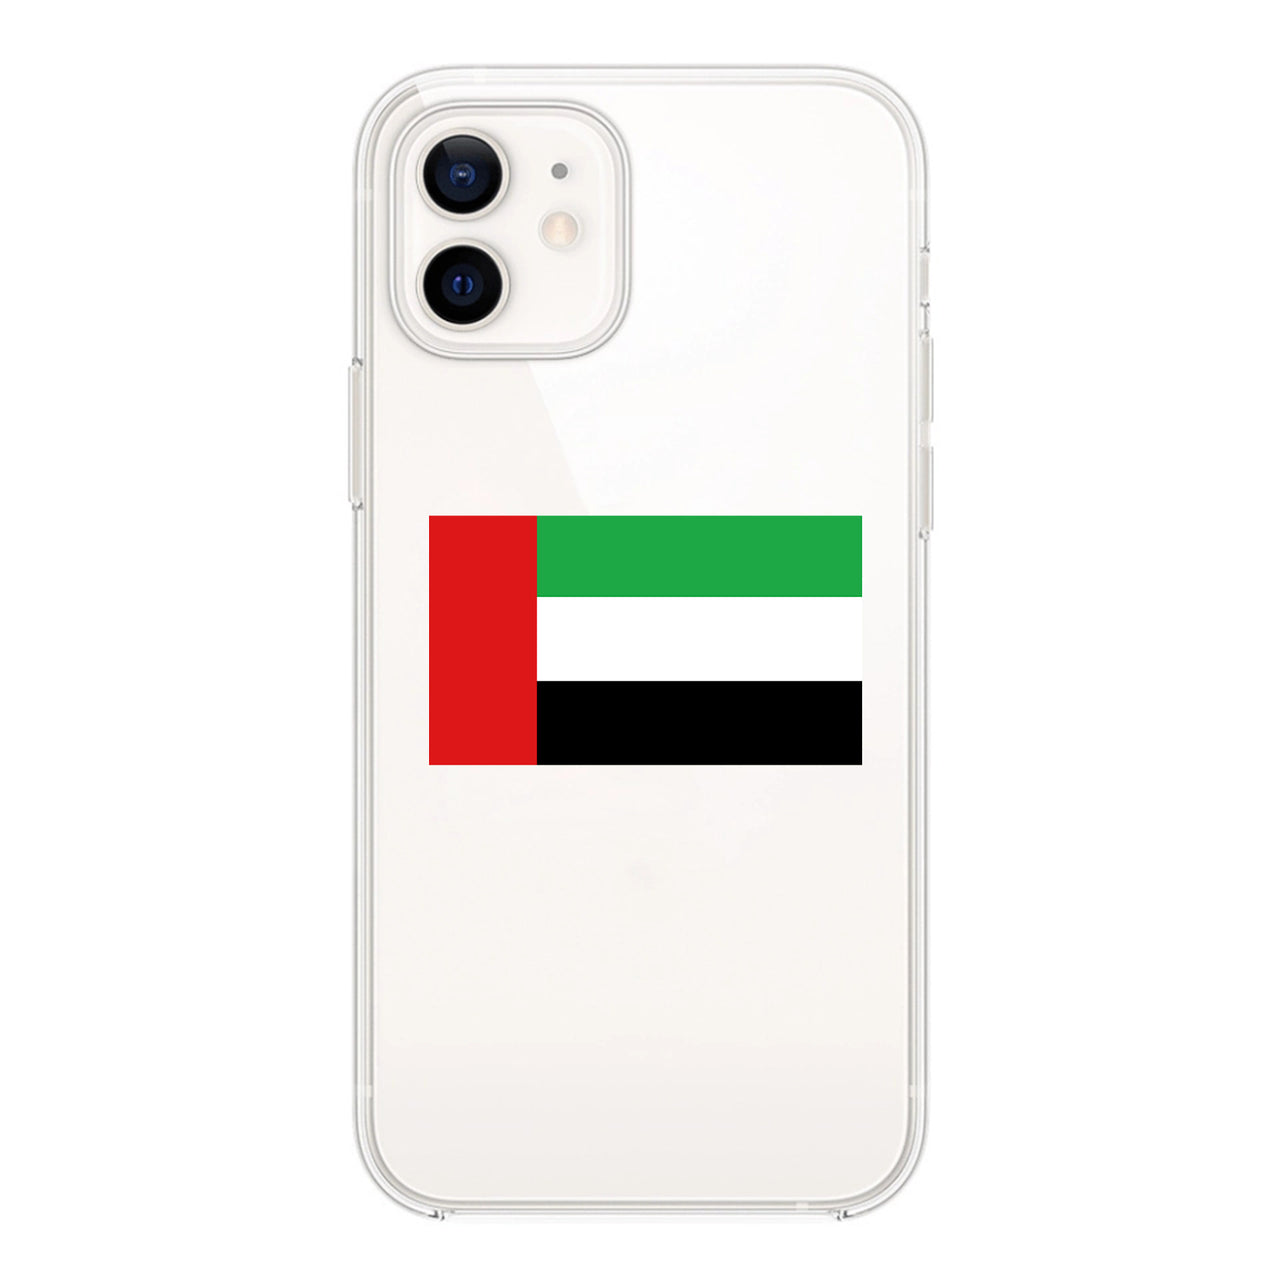 UAE Designed Transparent Silicone iPhone Cases